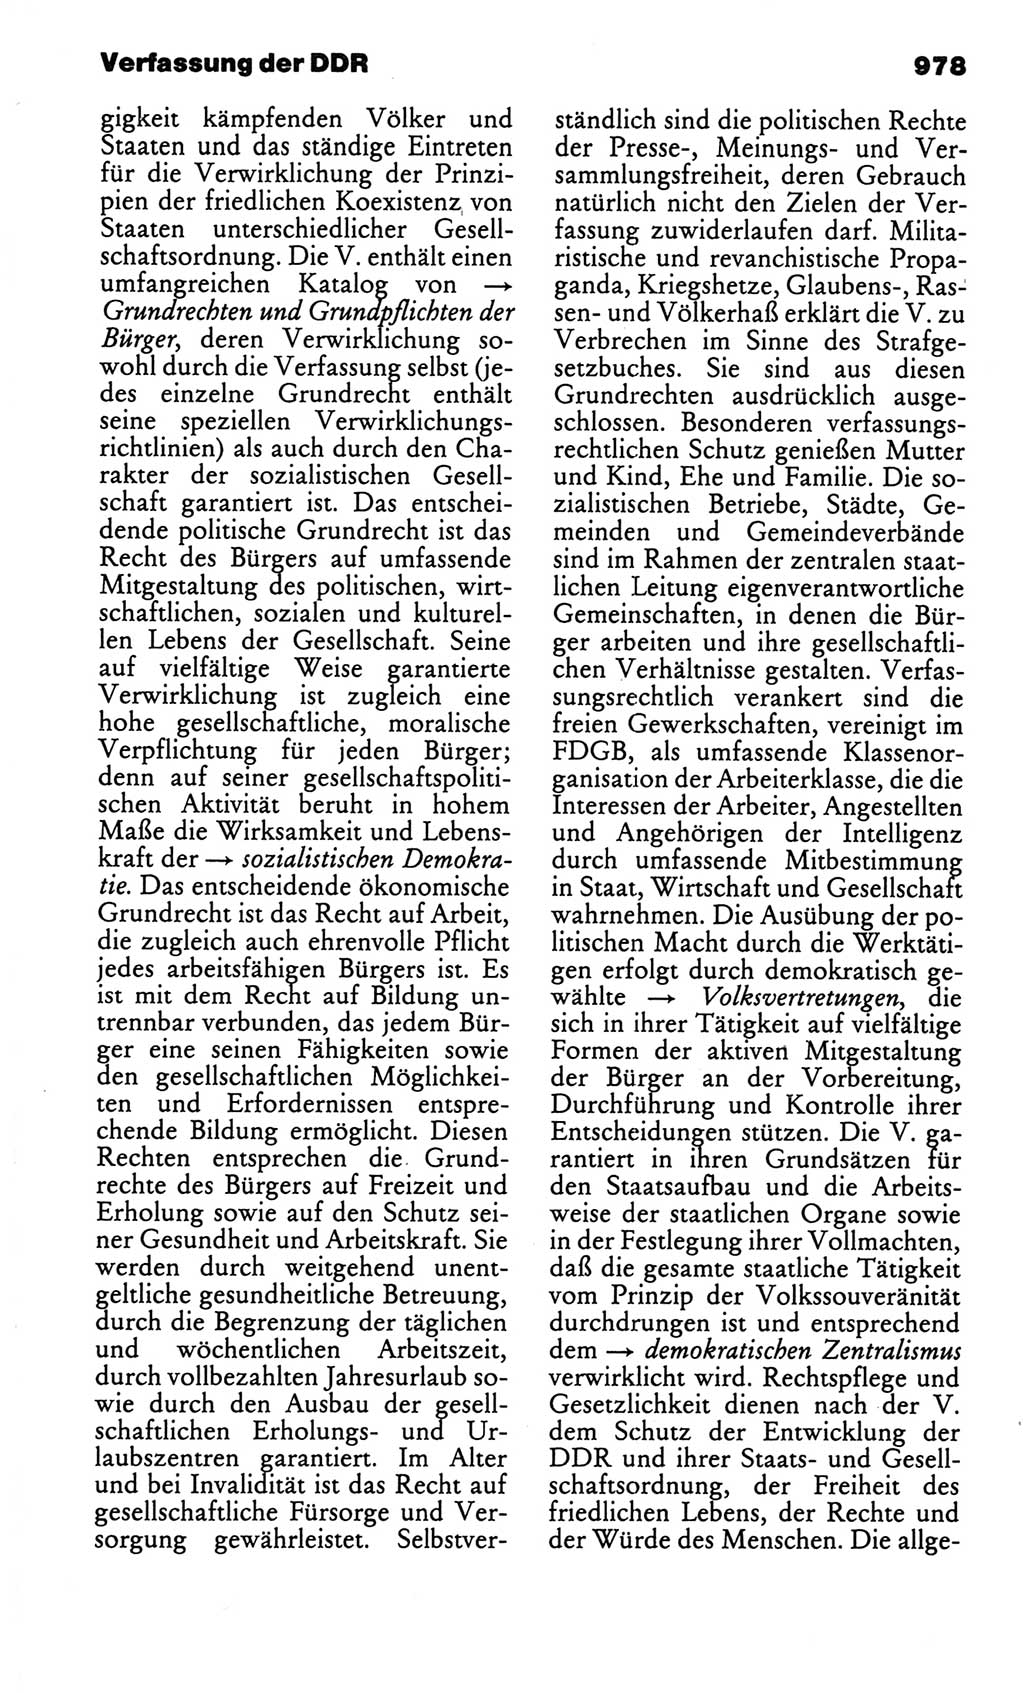 Kleines politisches Wörterbuch [Deutsche Demokratische Republik (DDR)] 1986, Seite 978 (Kl. pol. Wb. DDR 1986, S. 978)